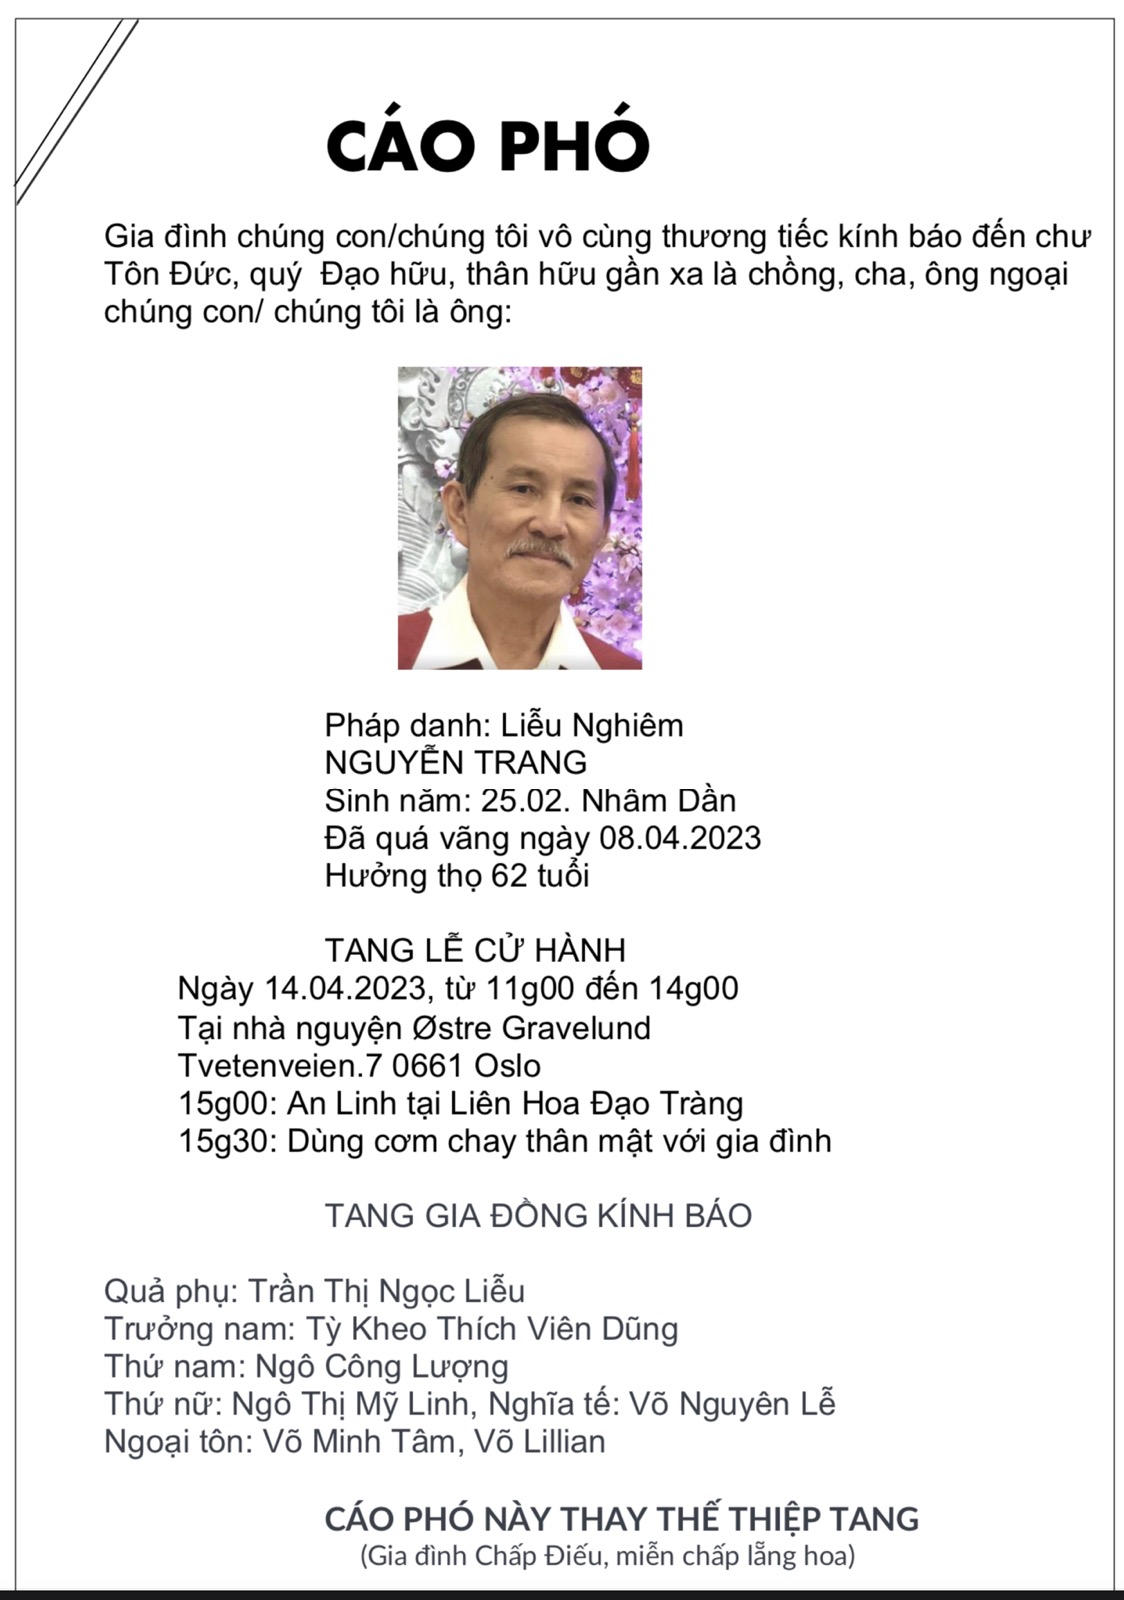 Cáo Phó ông Nguyễn Trang pháp danh Liễu Nghiêm